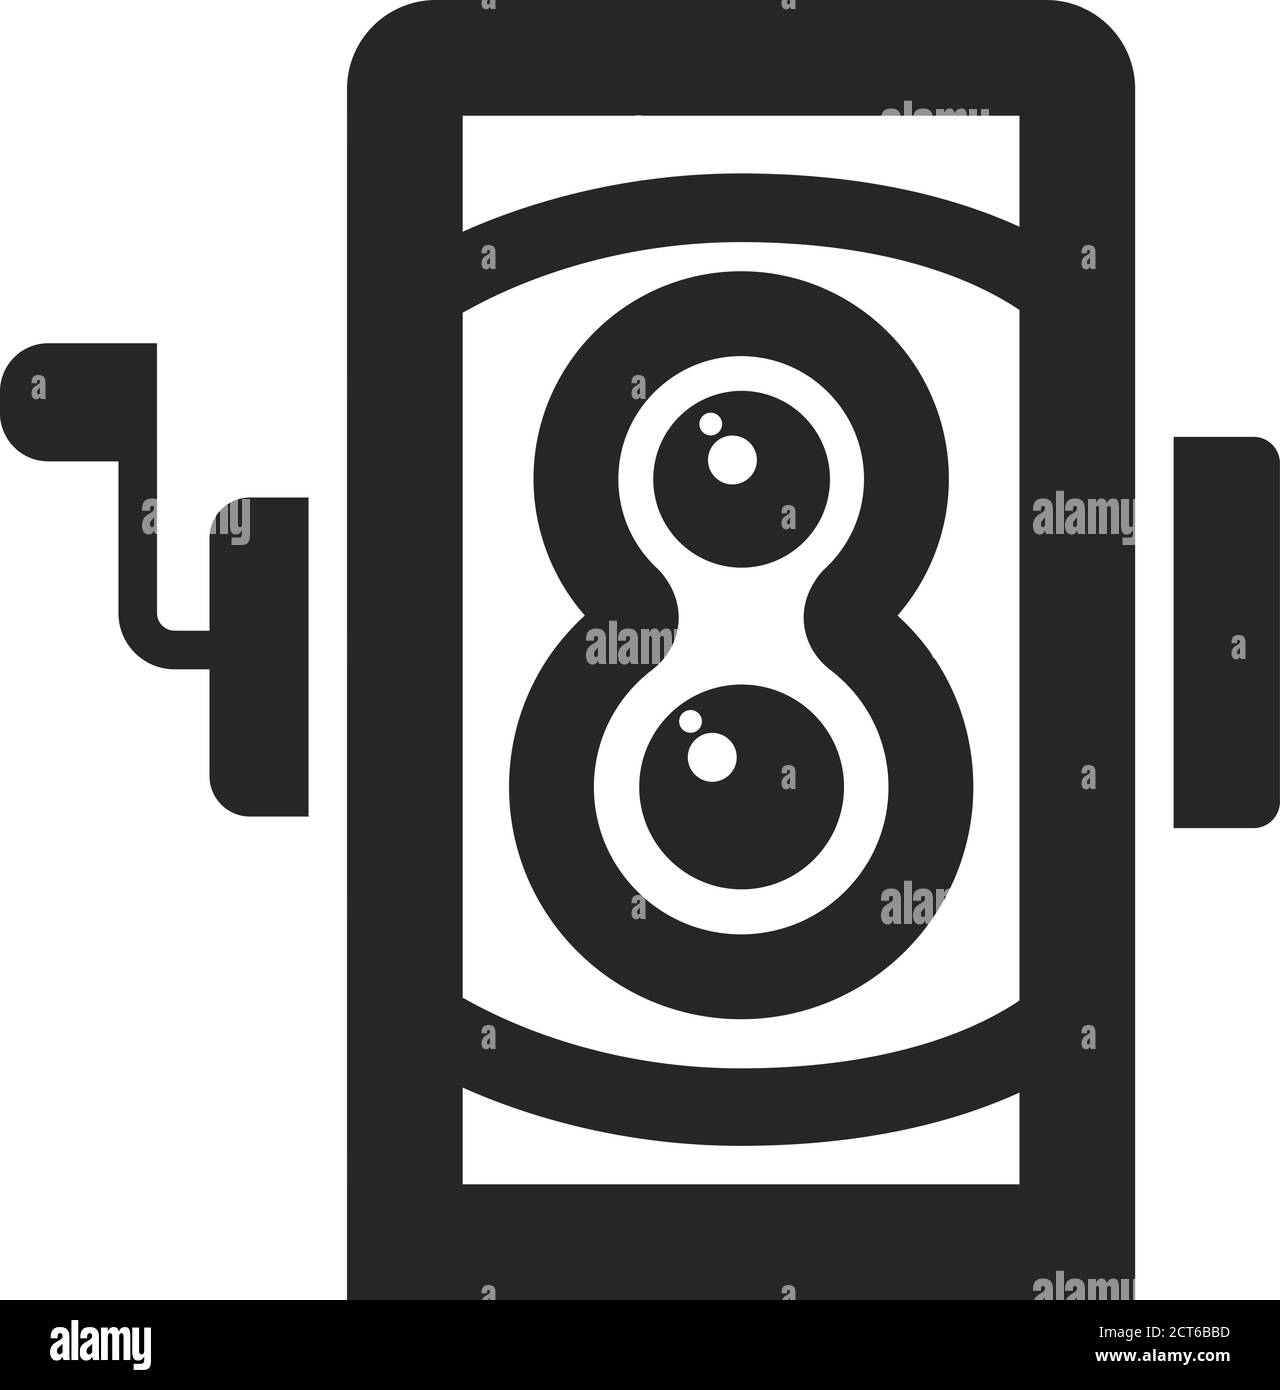 Icône d'appareil photo reflex à double objectif avec contour épais. Illustration vectorielle monochrome noir et blanc. Illustration de Vecteur